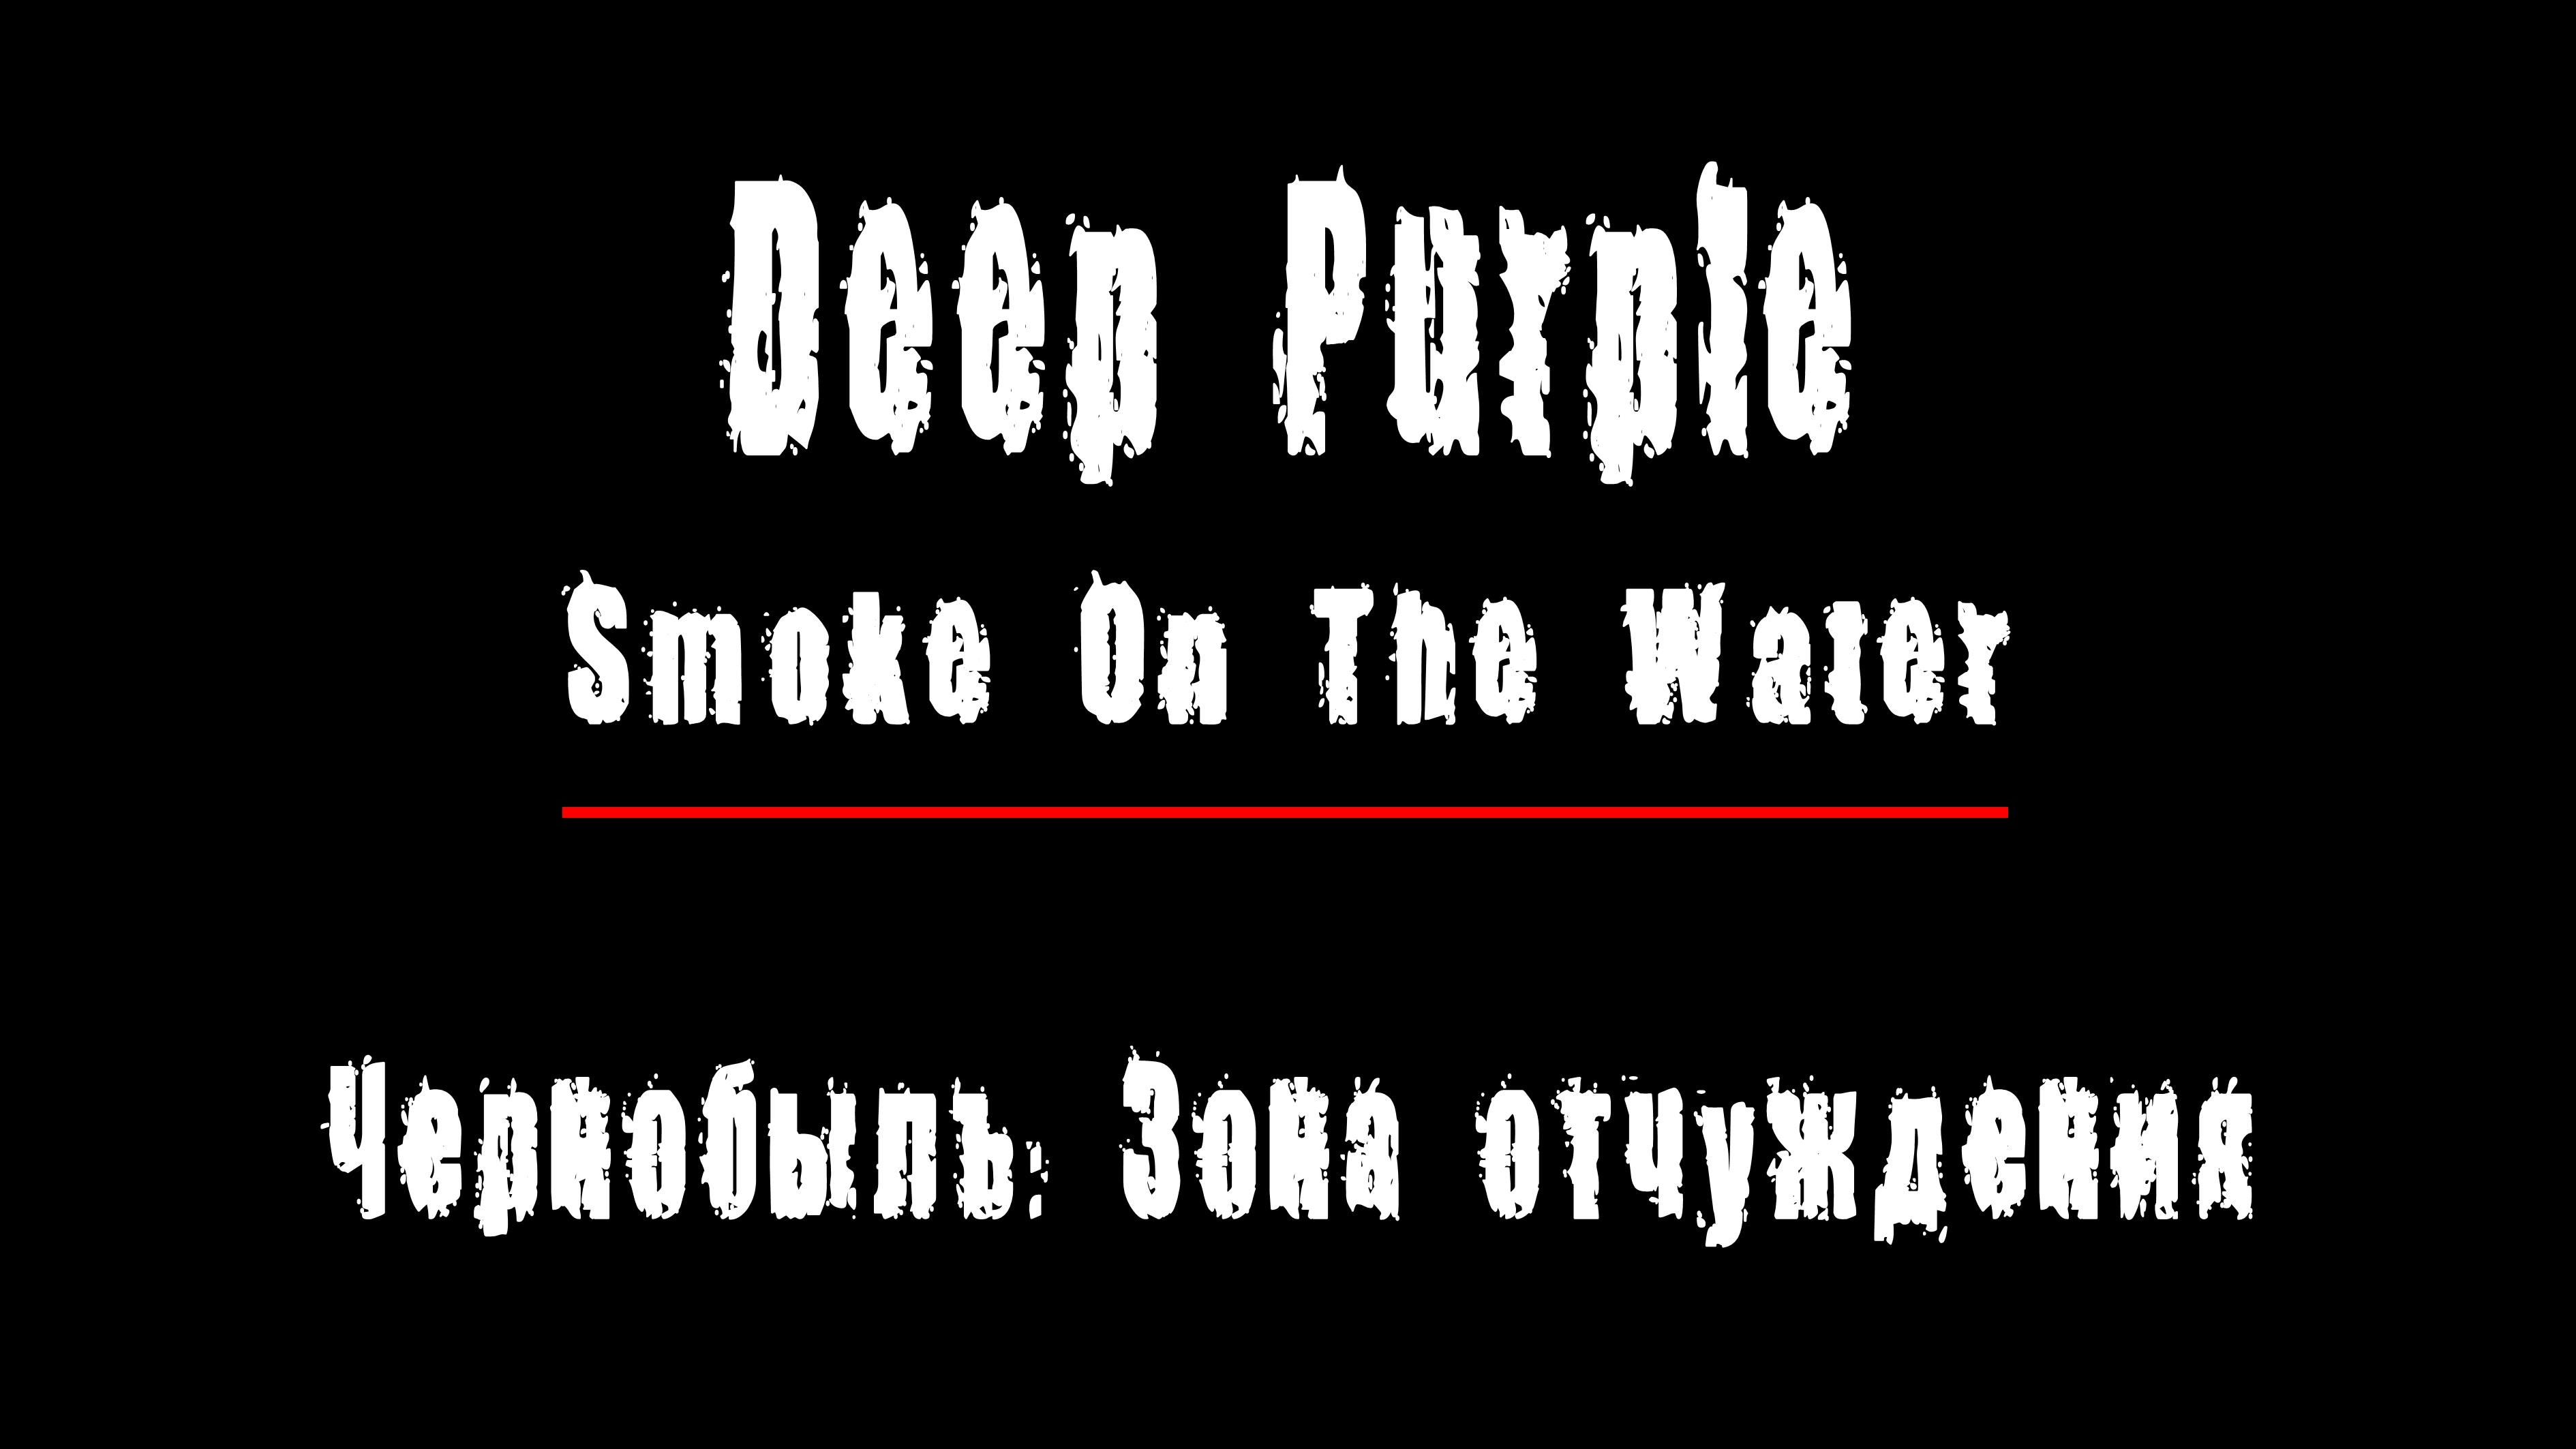 "SMOKE ON THE WATER" - группа "Deep Purple". Чернобыль: Зона Отчуждения, Припять.